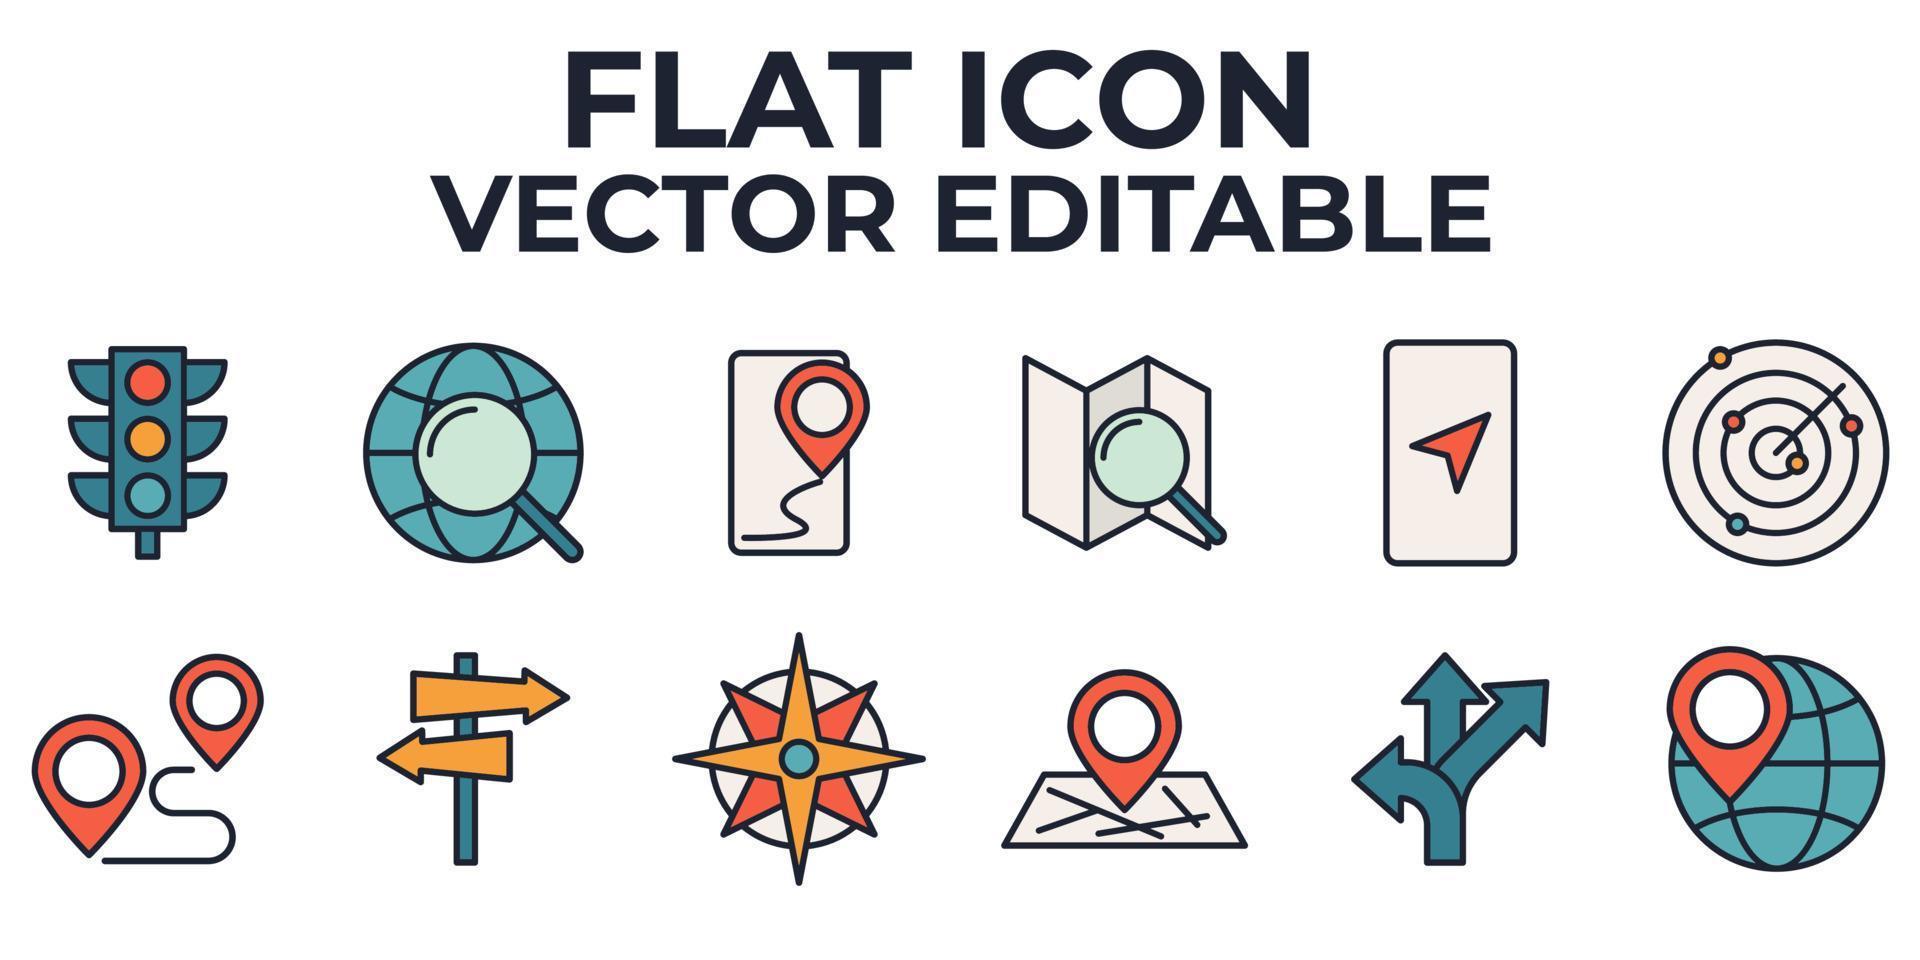 kaart locatie en navigatie set pictogram symbool sjabloon voor grafisch en webdesign collectie logo vectorillustratie vector